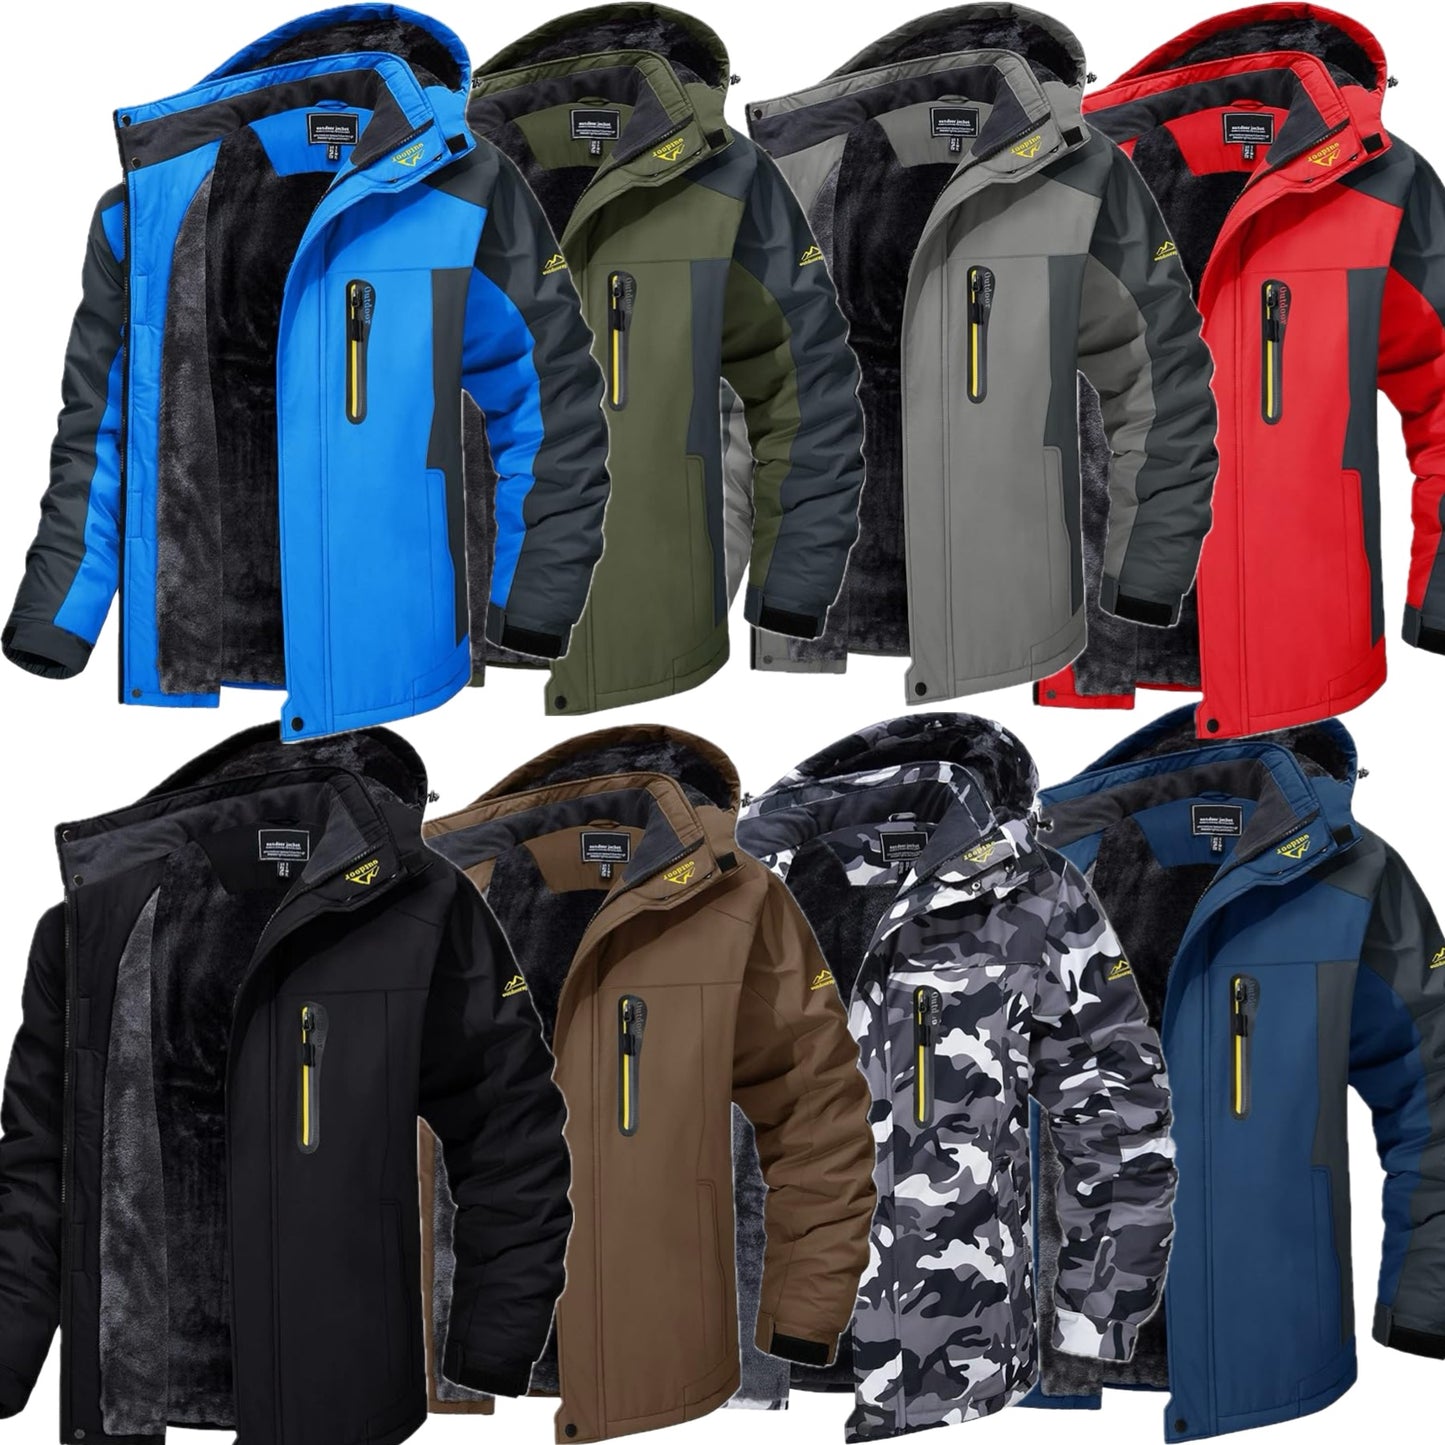 TACVASEN Men's Softshell Jacket Waterproof Windproof Fleece Lined